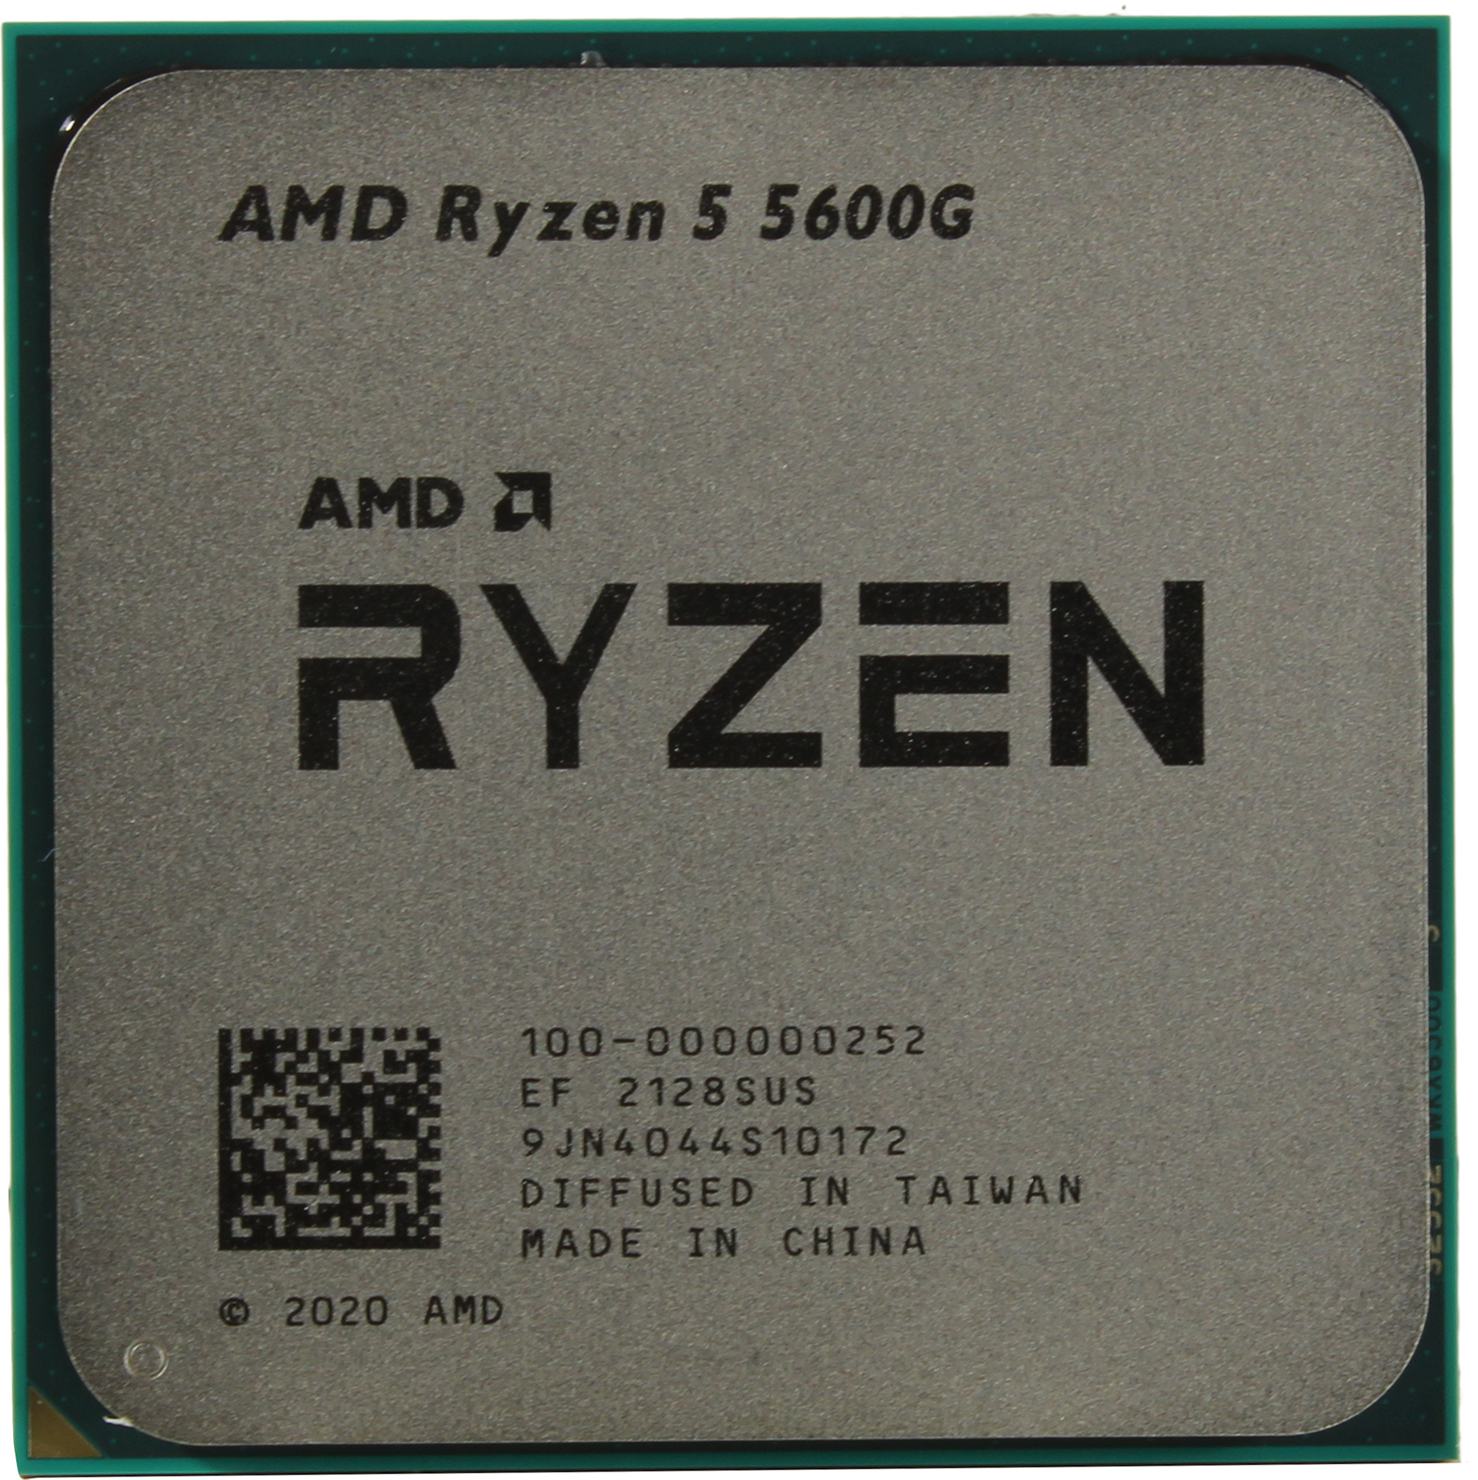 5600g amd ryzen 5 AMD Ryzen